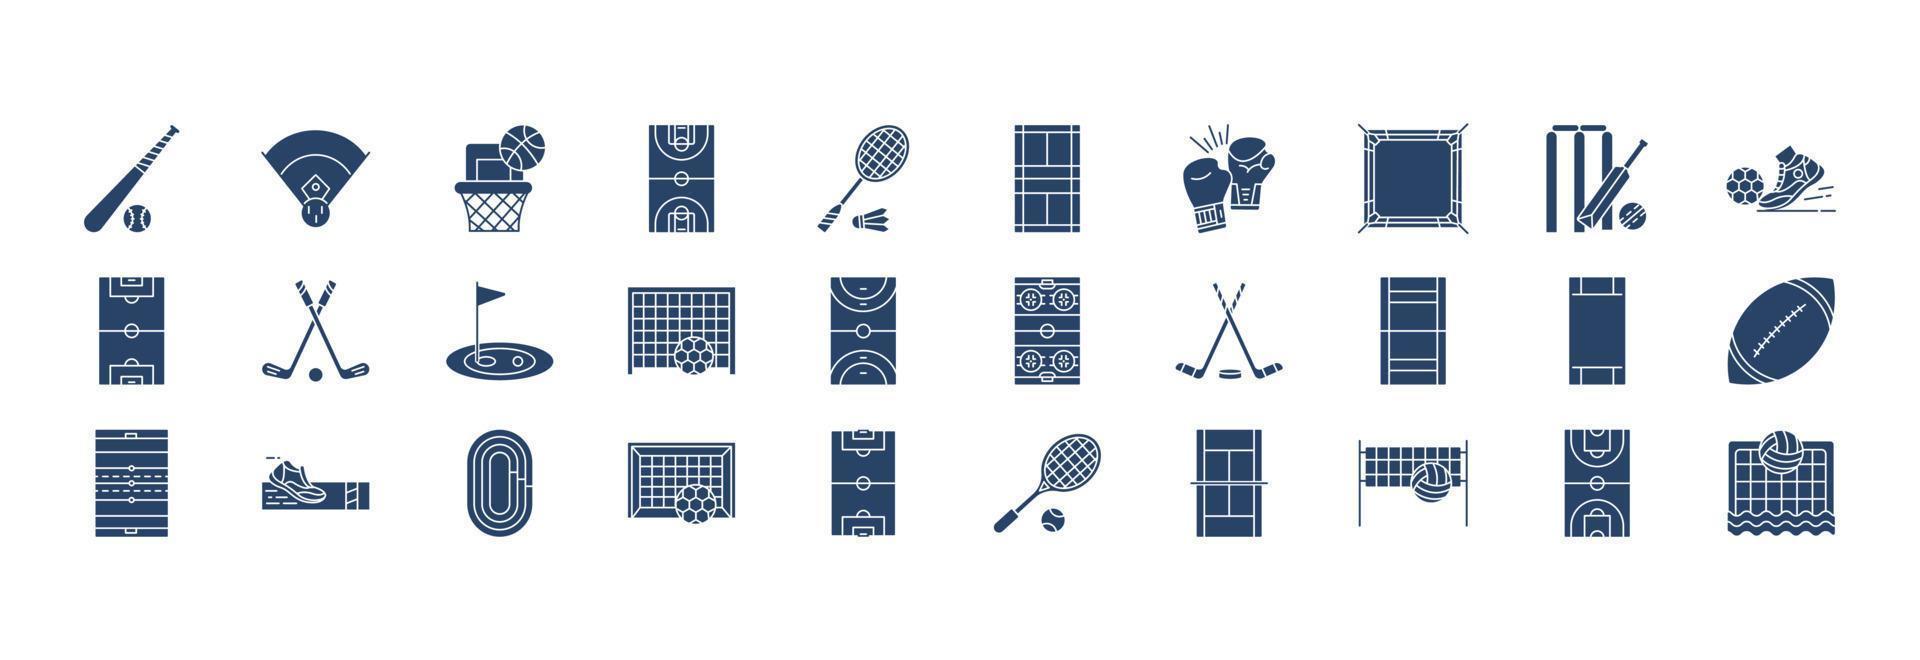 colección de íconos relacionados con estadios y juegos, incluidos íconos como el juego de béisbol, baloncesto, boxeo, cricket y más. ilustraciones vectoriales, conjunto perfecto de píxeles vector